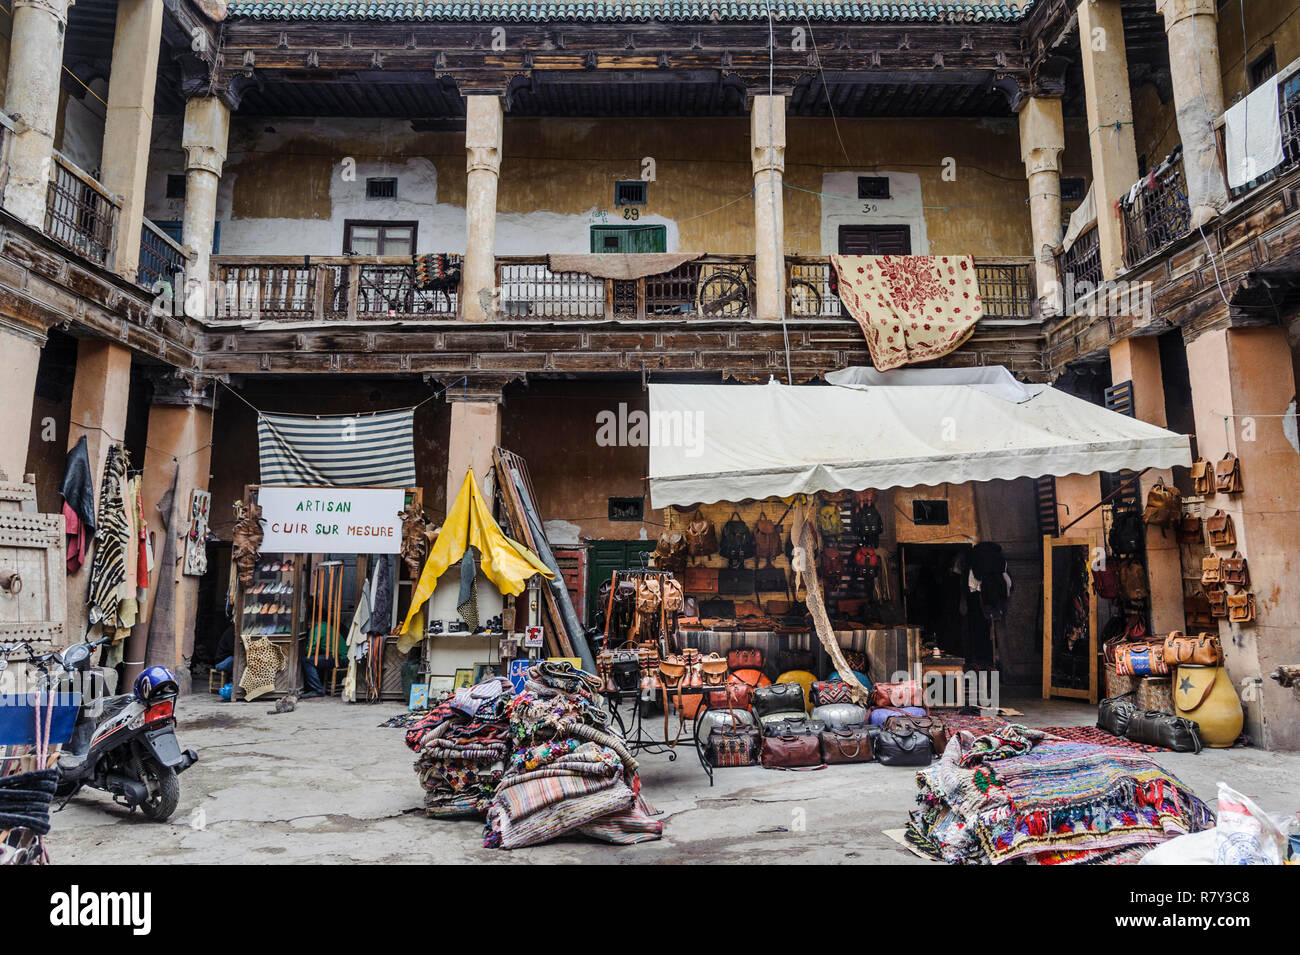 05-03-15, Marrakech, Marocco. Un piccolo artigianato mercato nella antica, la vecchia parte della citta'. Foto: © Simon Grosset Foto Stock